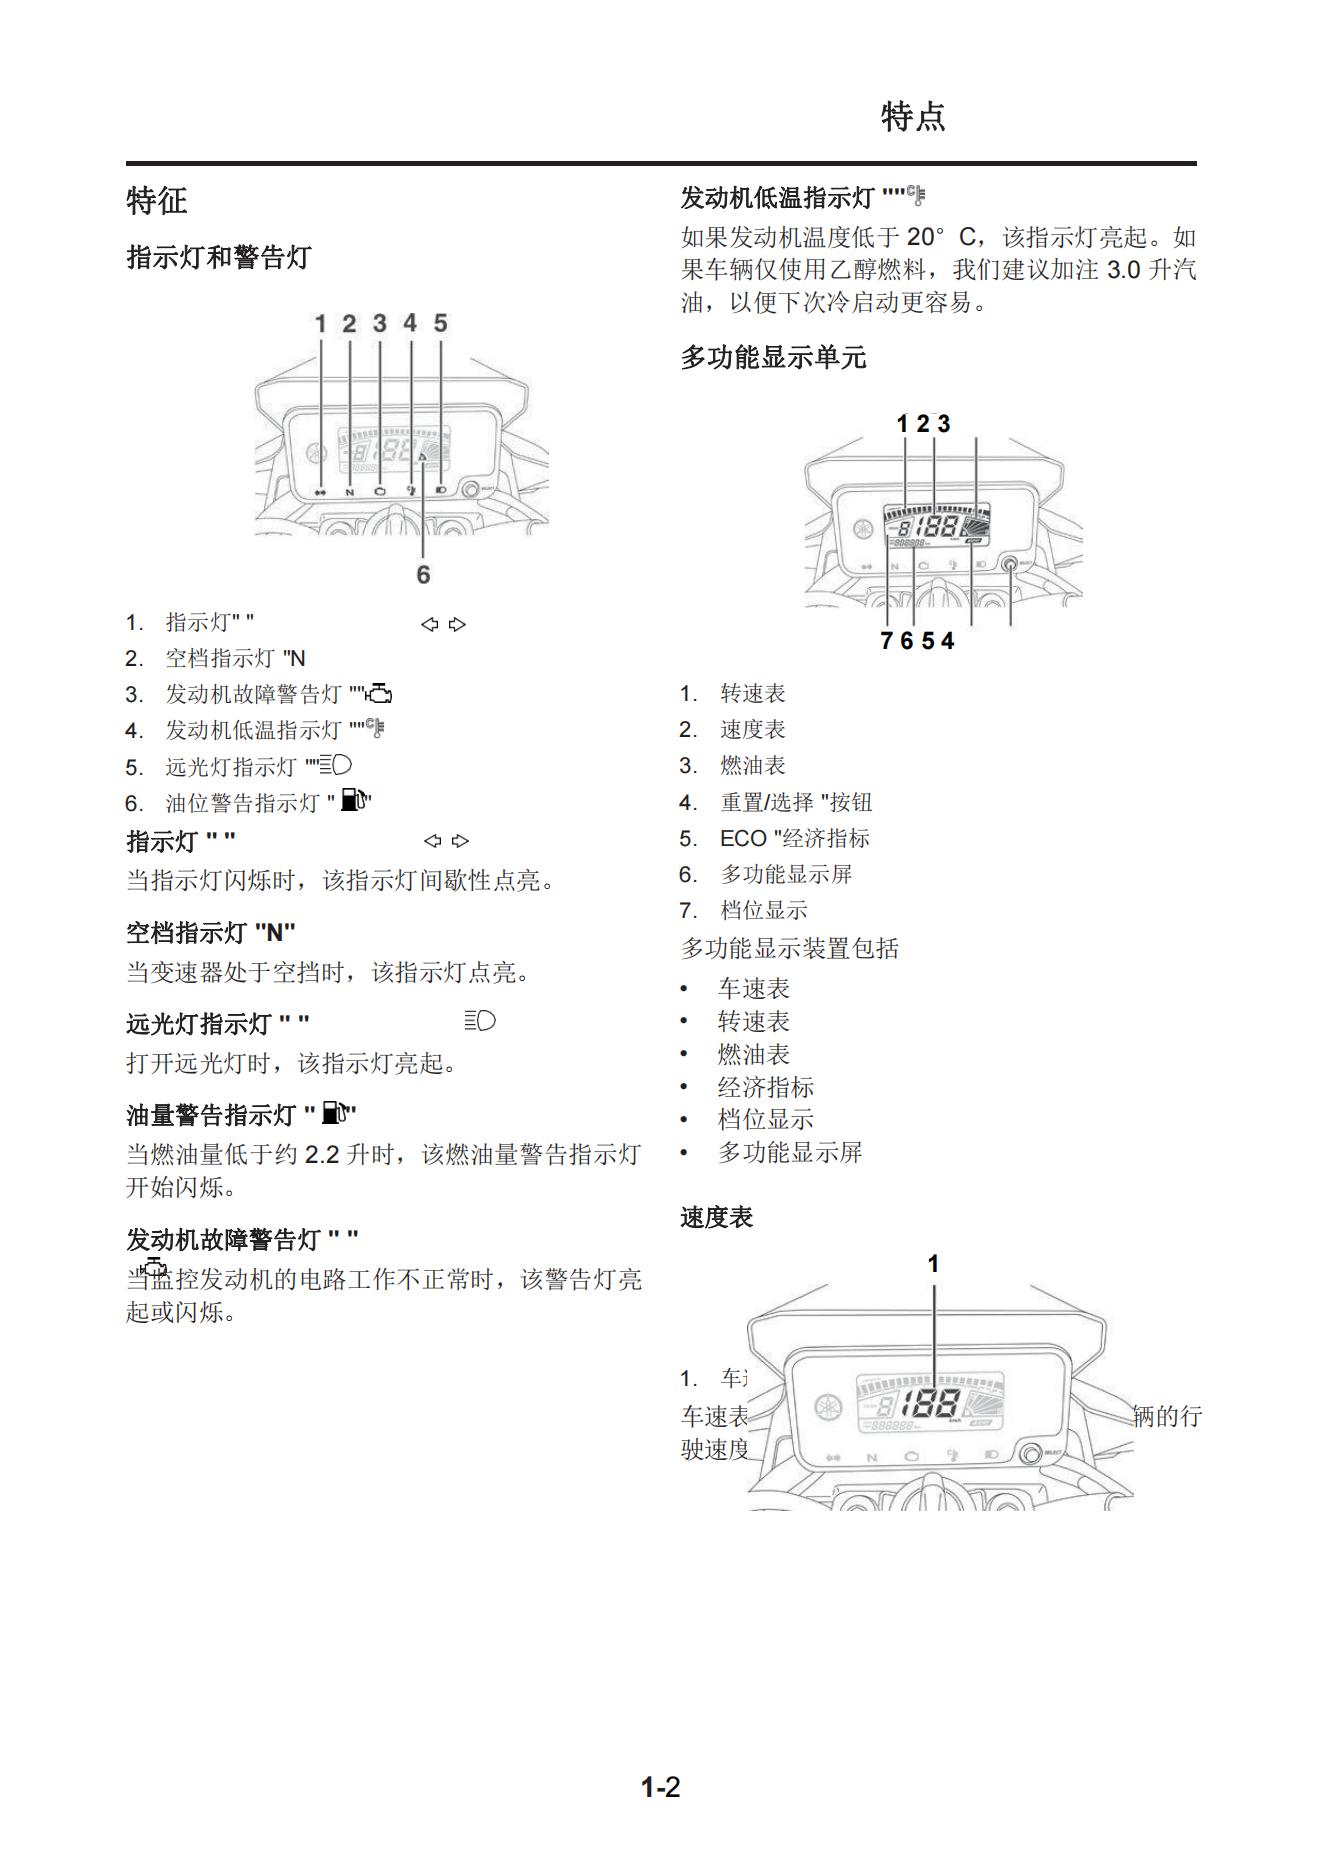 简体中文2020年雅马哈ybr125i维修手册天剑125维修手册插图1